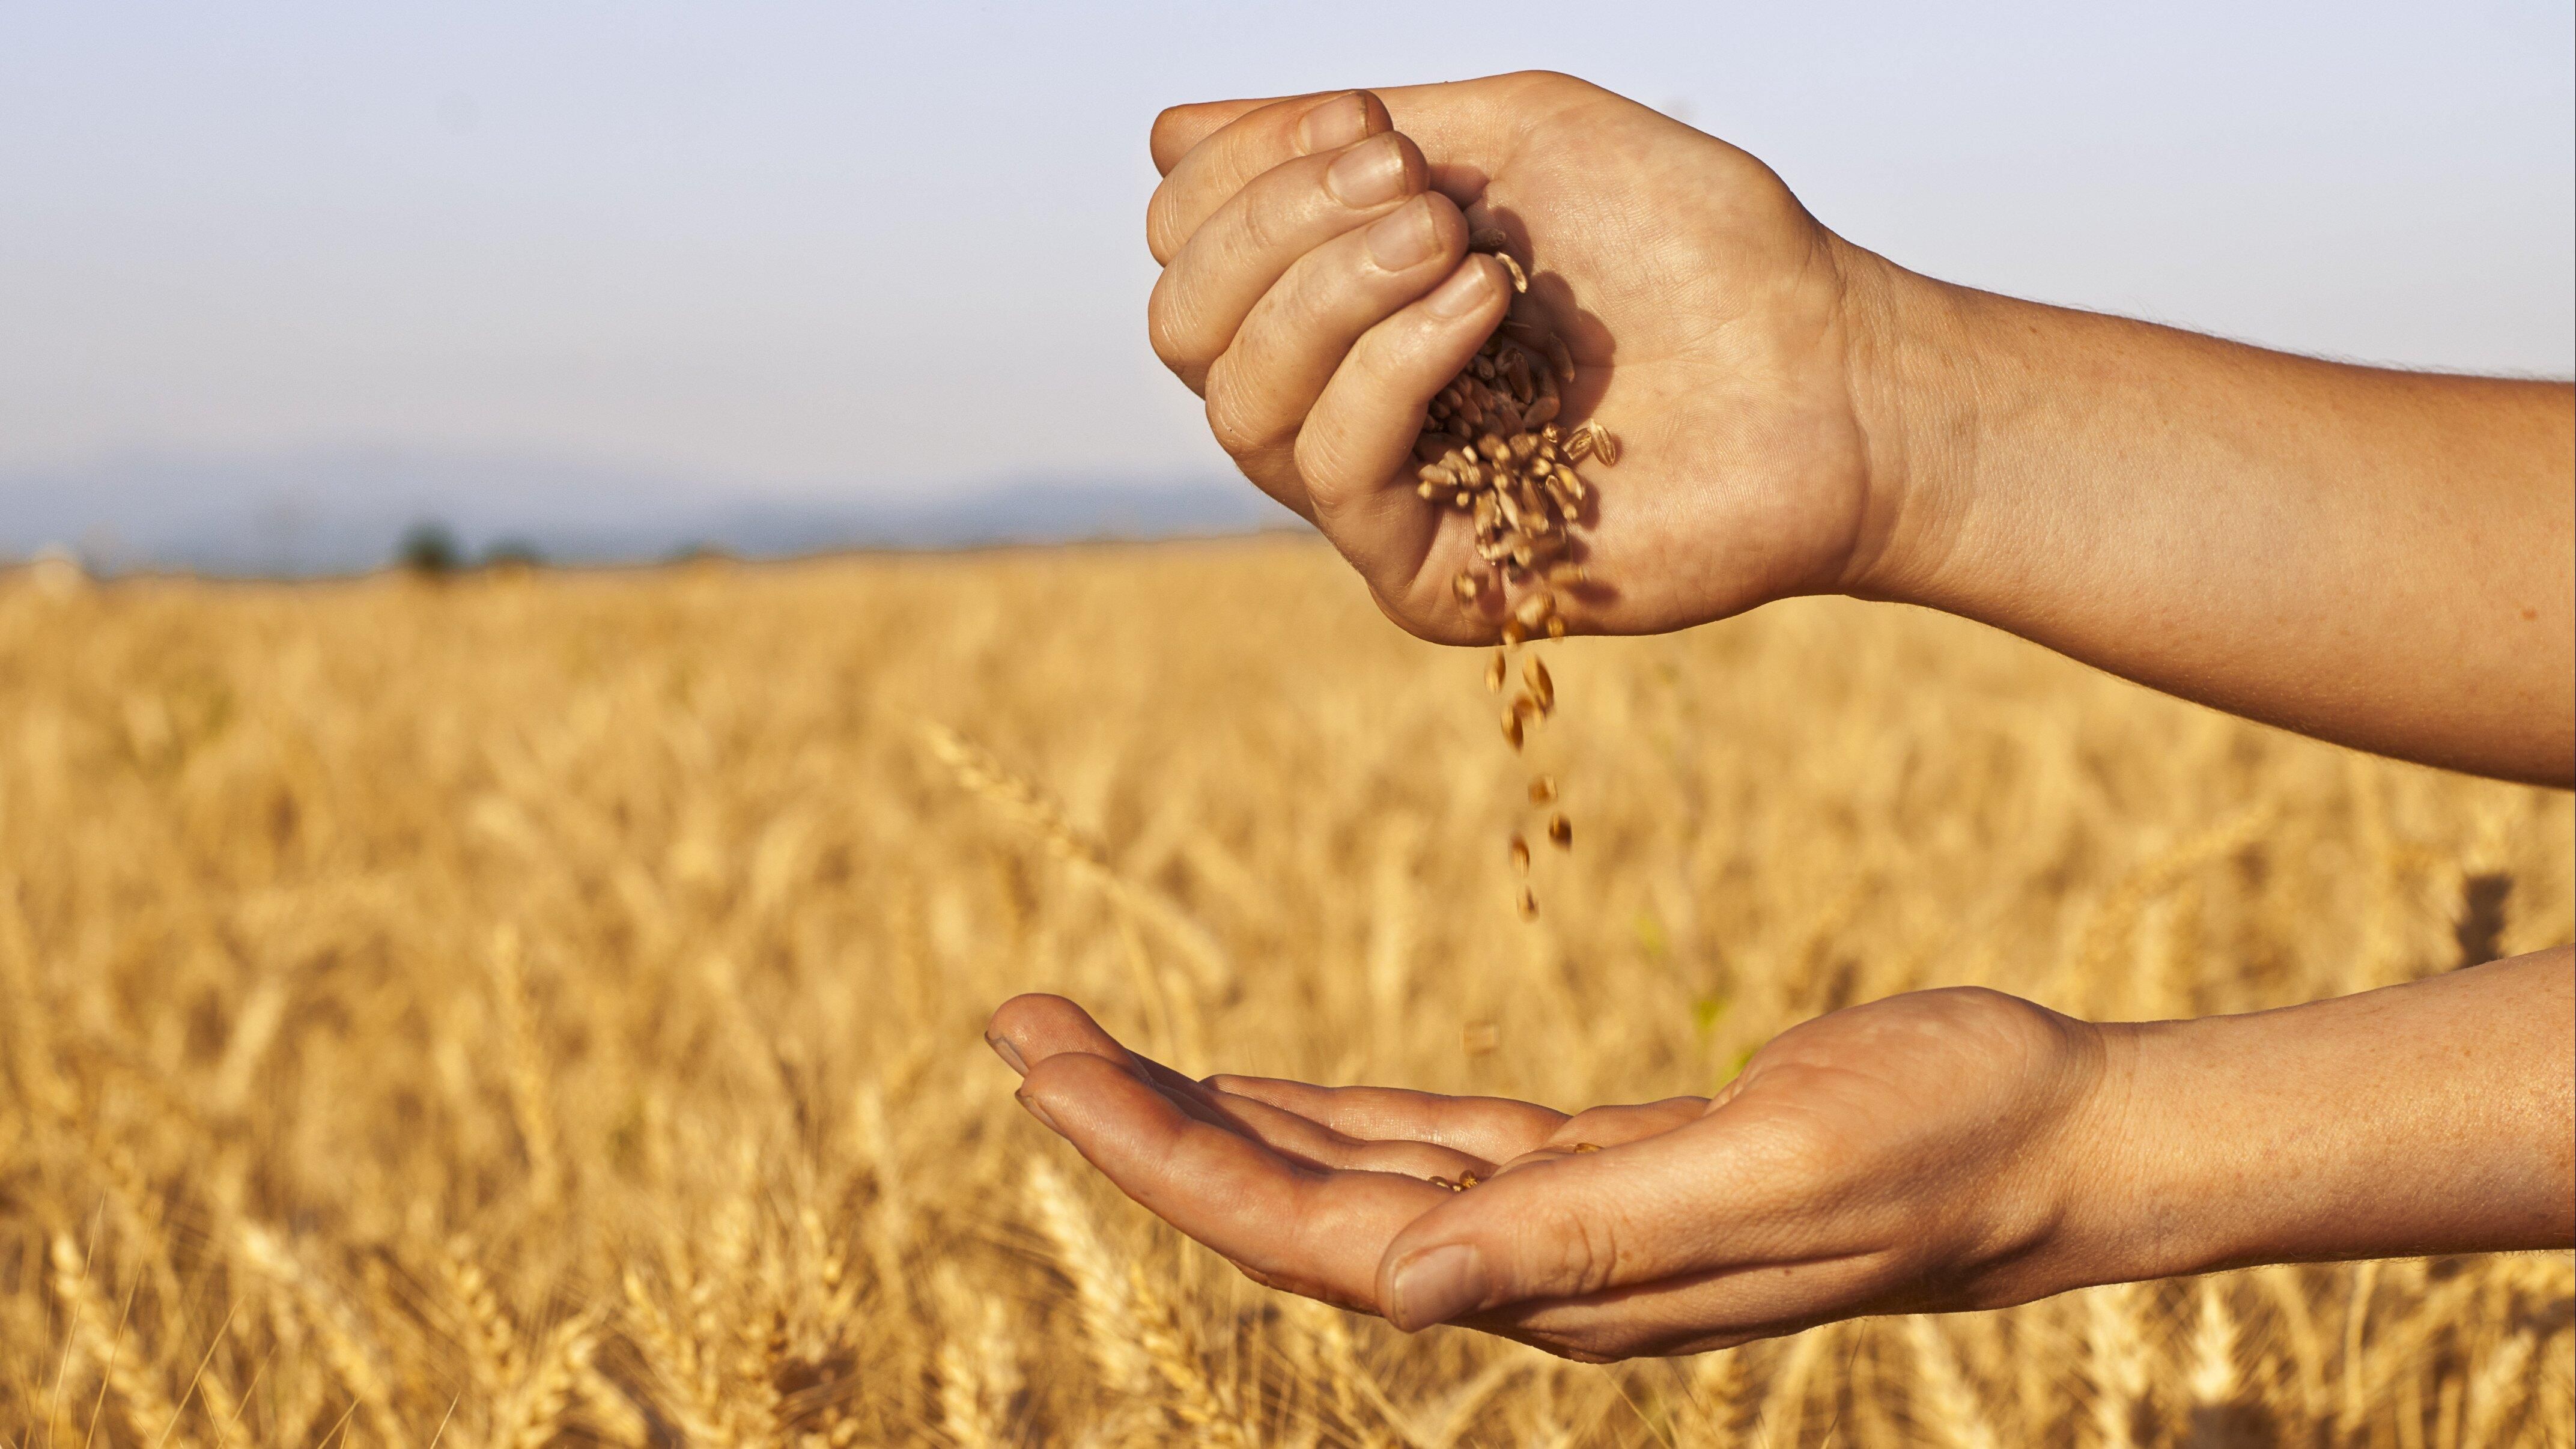 Почти 800 гривен на тонне зерновых теряют аграрии из-за коллапса на железной дороге, – Козаченко